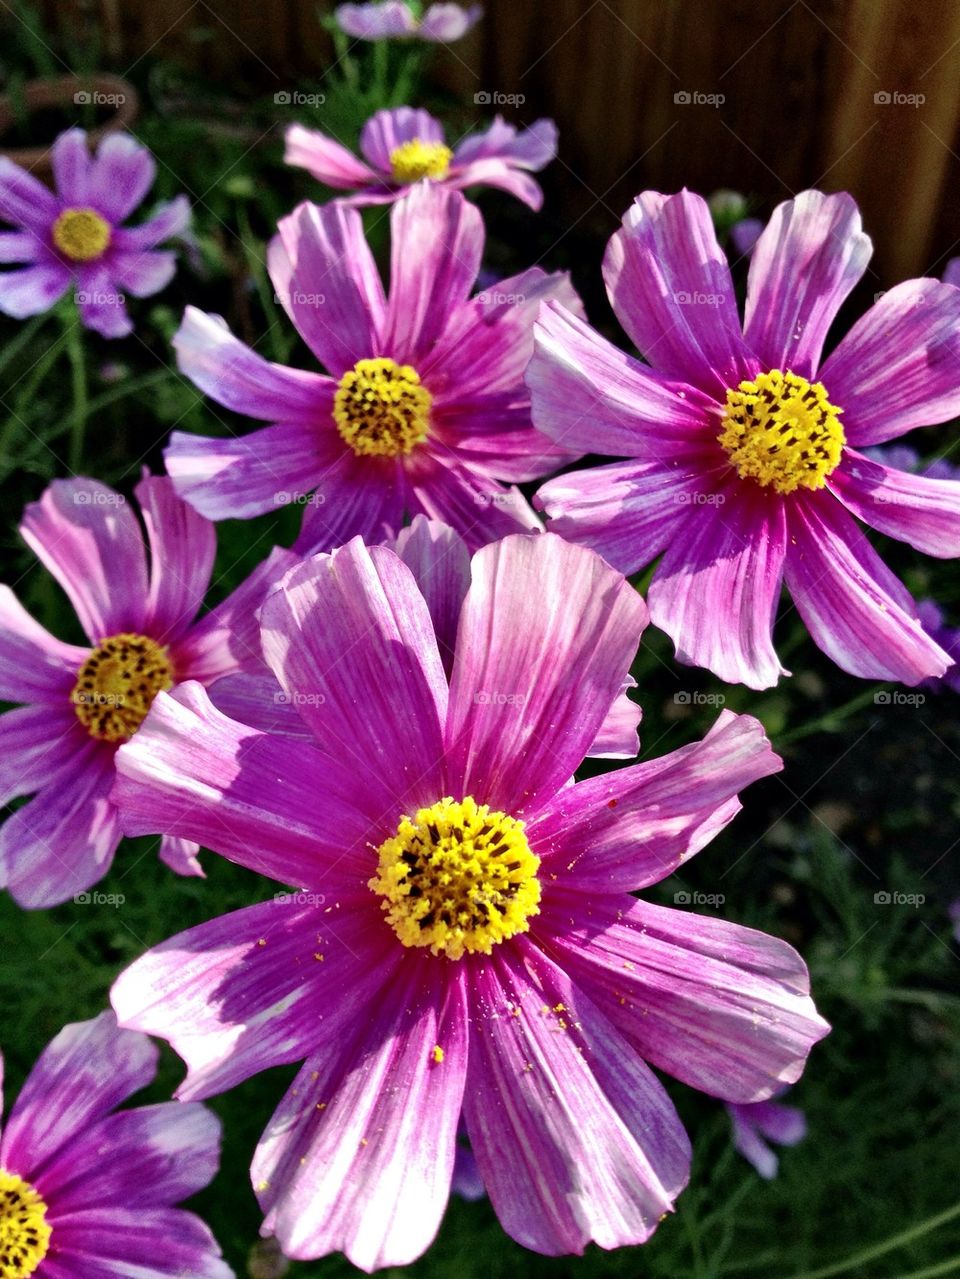 Cosmos flowers